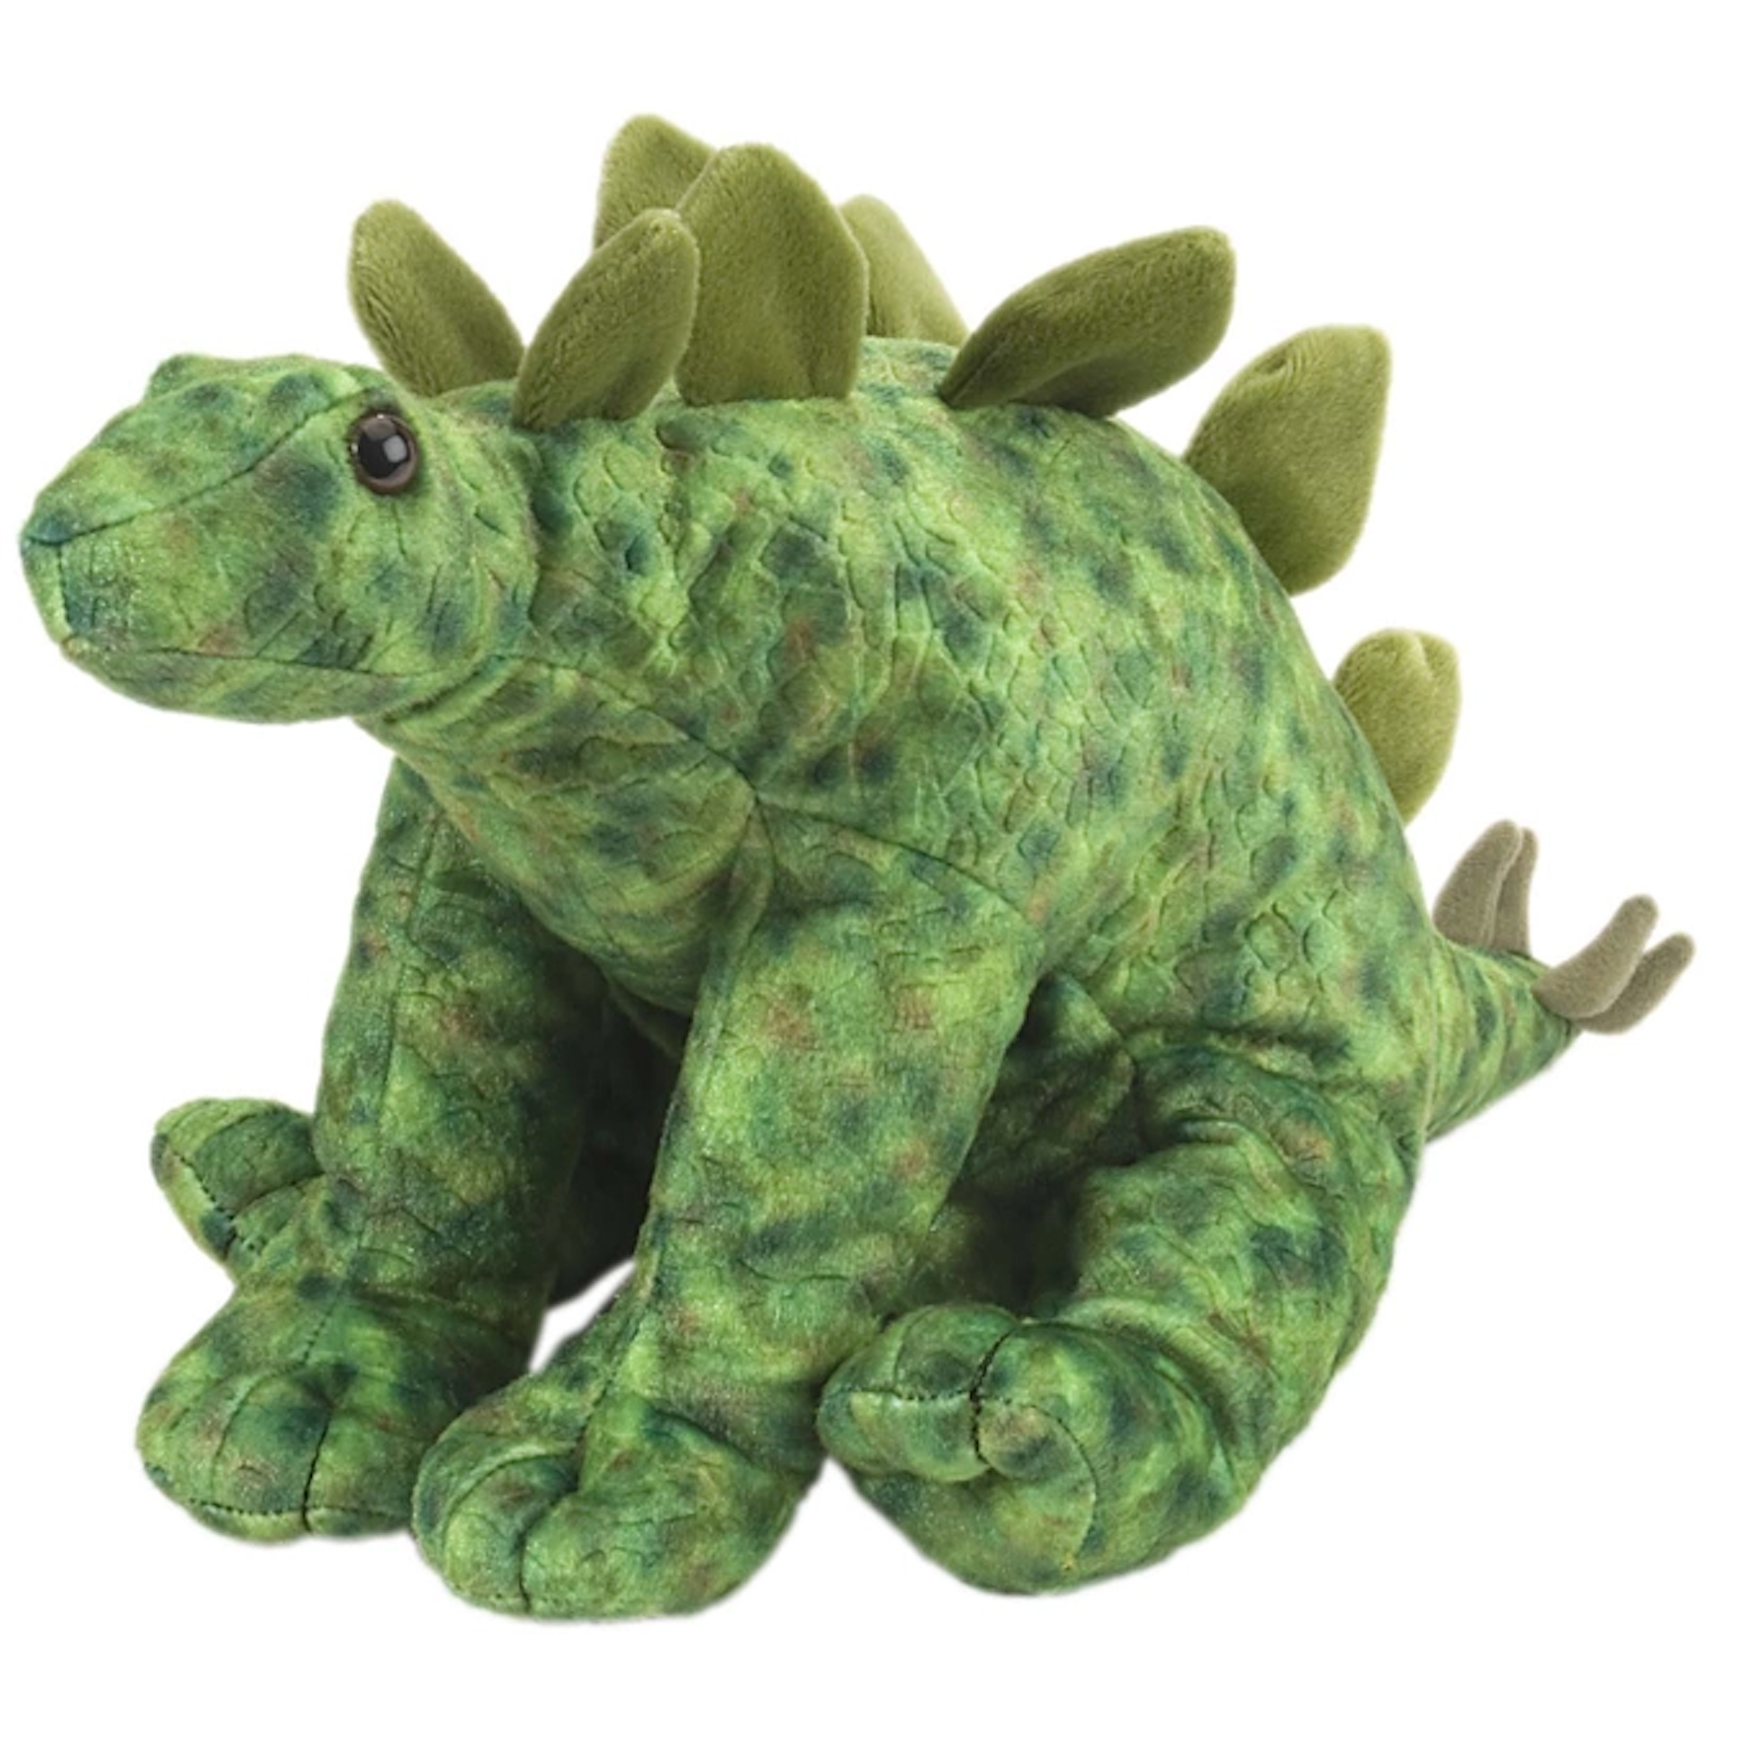 Stegosaurus Stuffed Animal - 12"